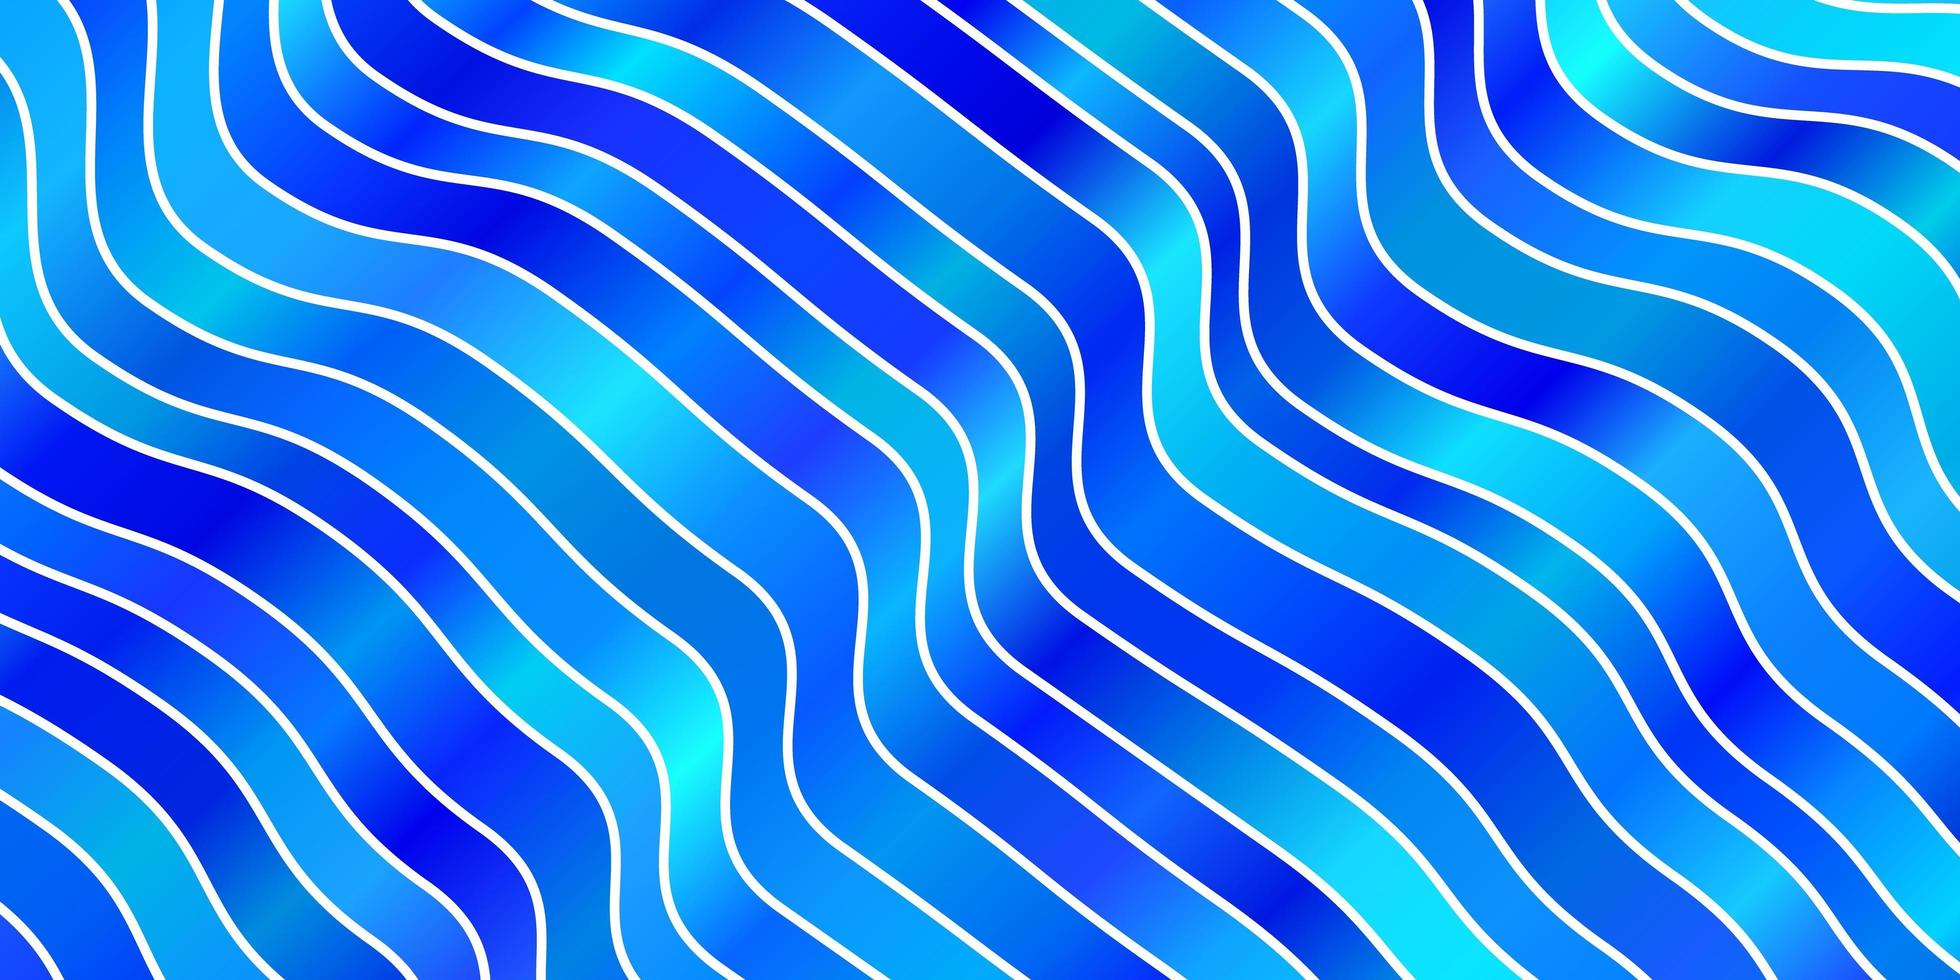 Hellblaues Vektor-Layout mit Kreisbogen abstrakte Darstellung mit Farbverlauf Bögen Muster für Geschäftsbroschüren Broschüren leaf vektor